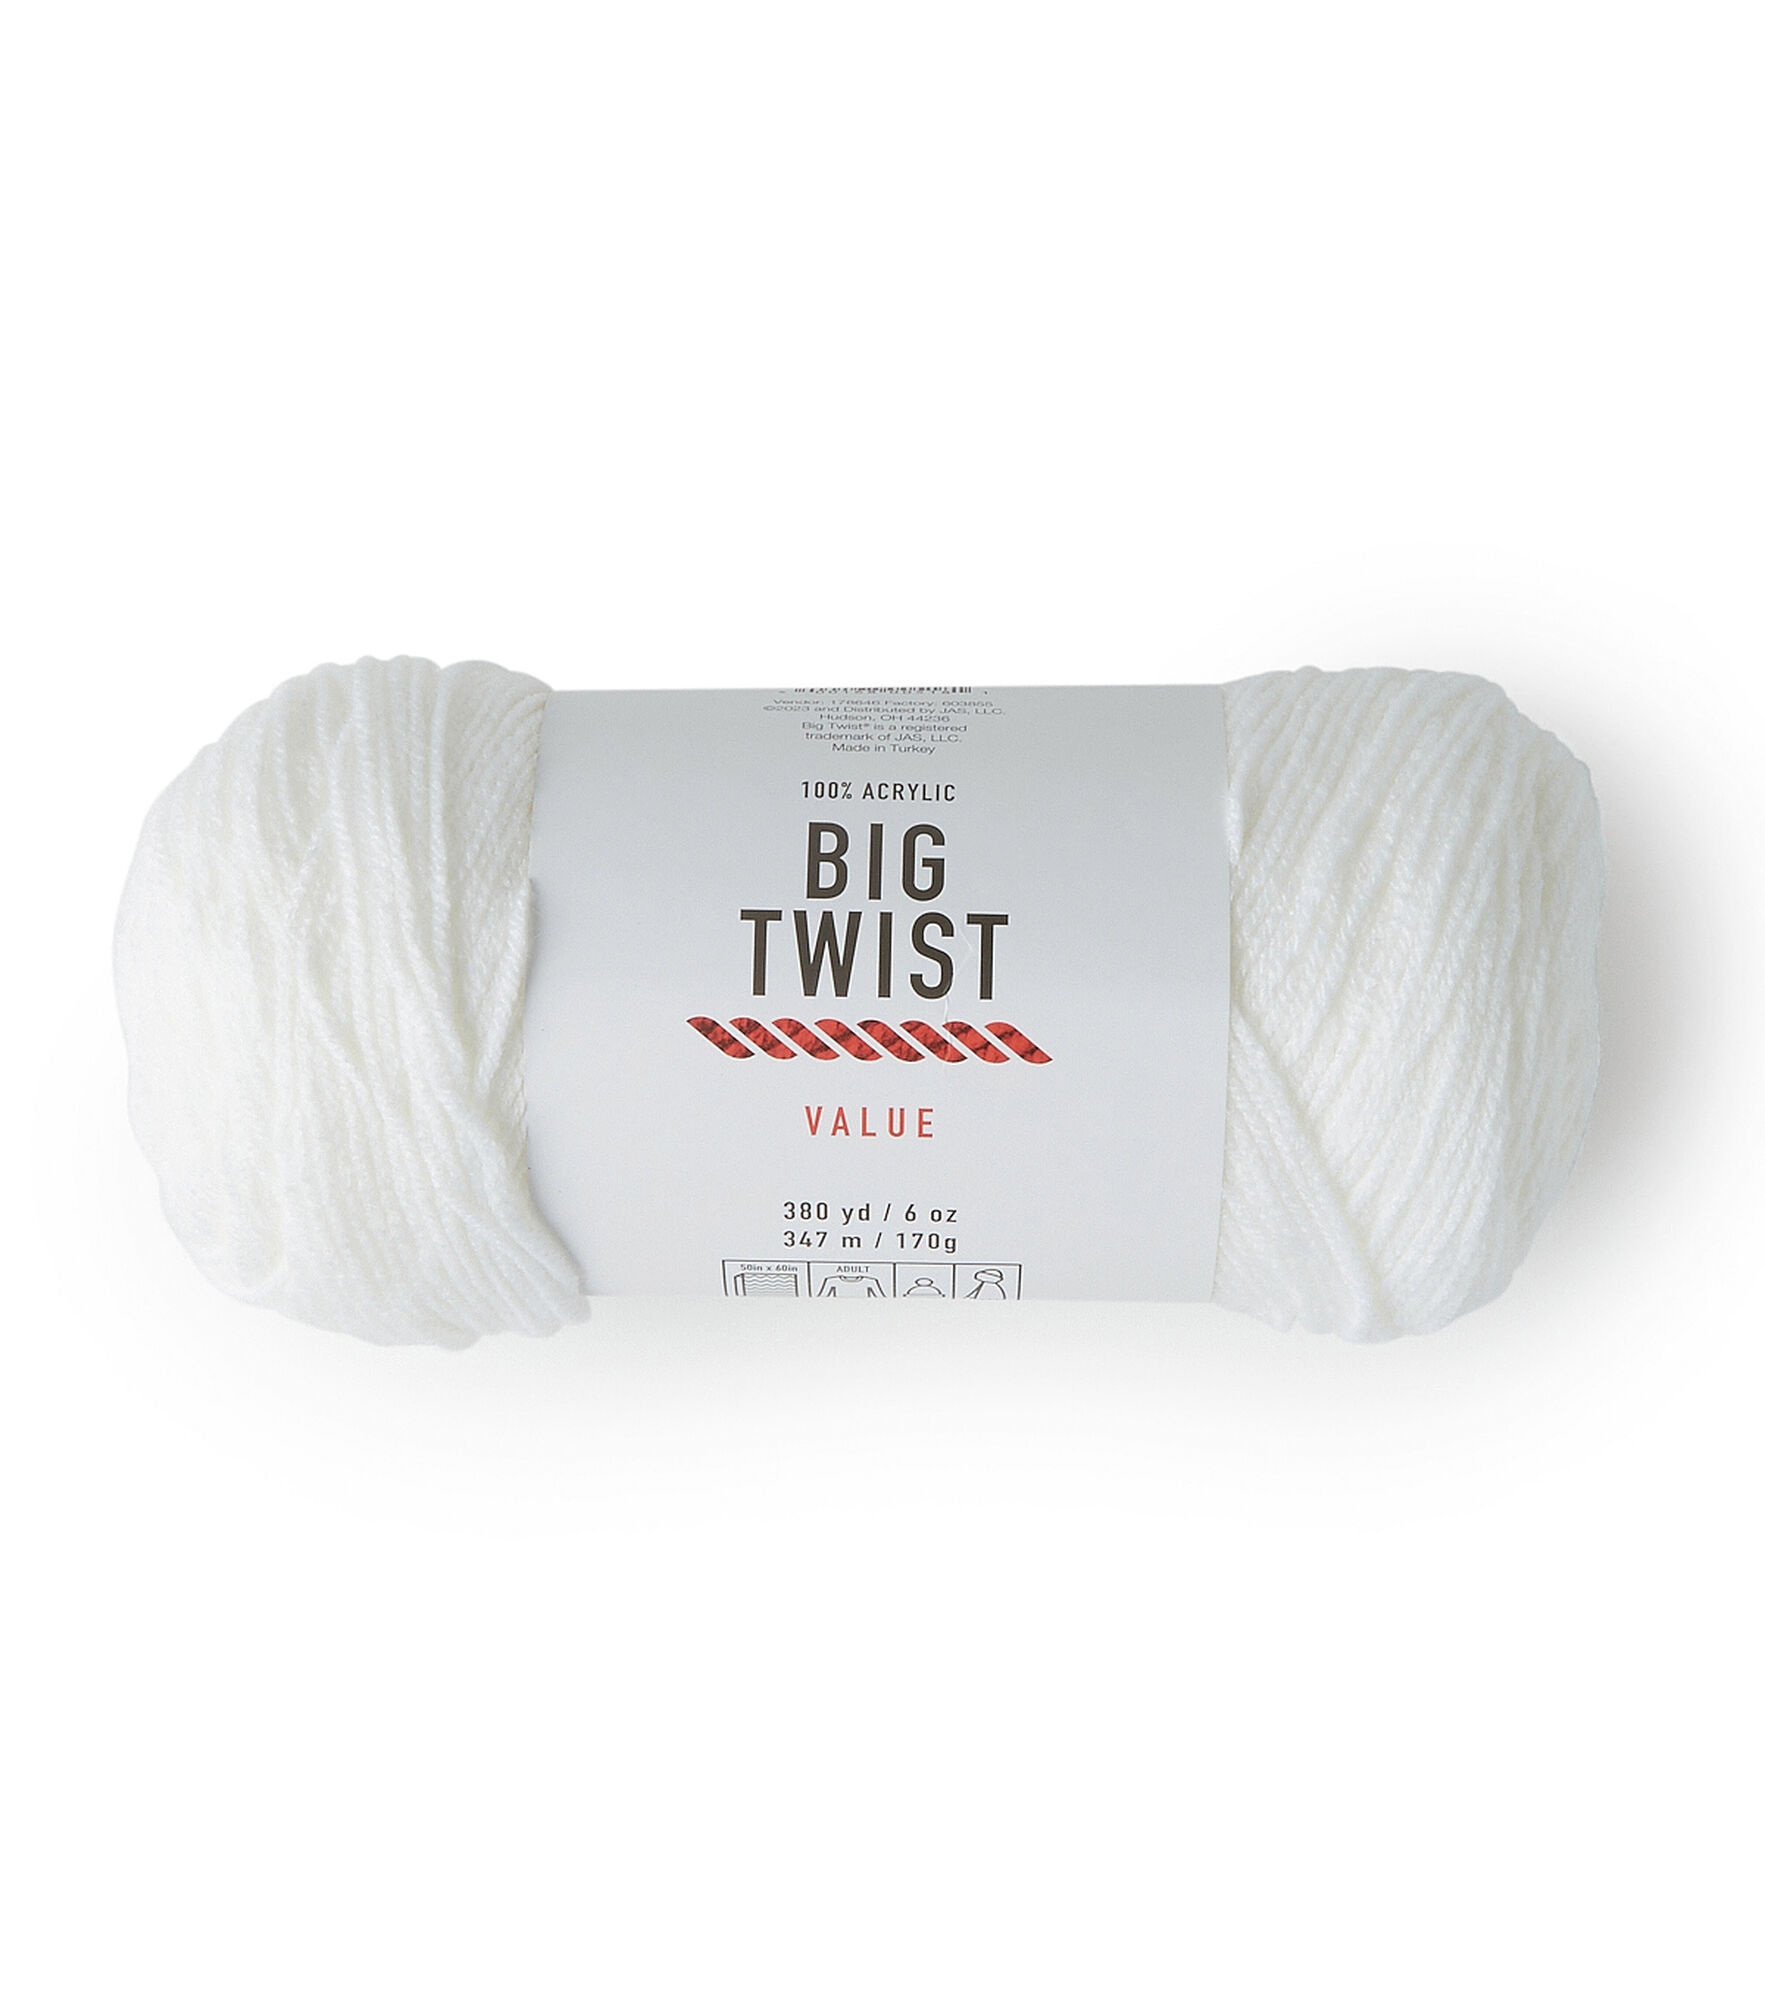  Medium Gauge Worsted Weight Cotton Yarn - 100 Grams Per Skein -  Black - 1 Skein